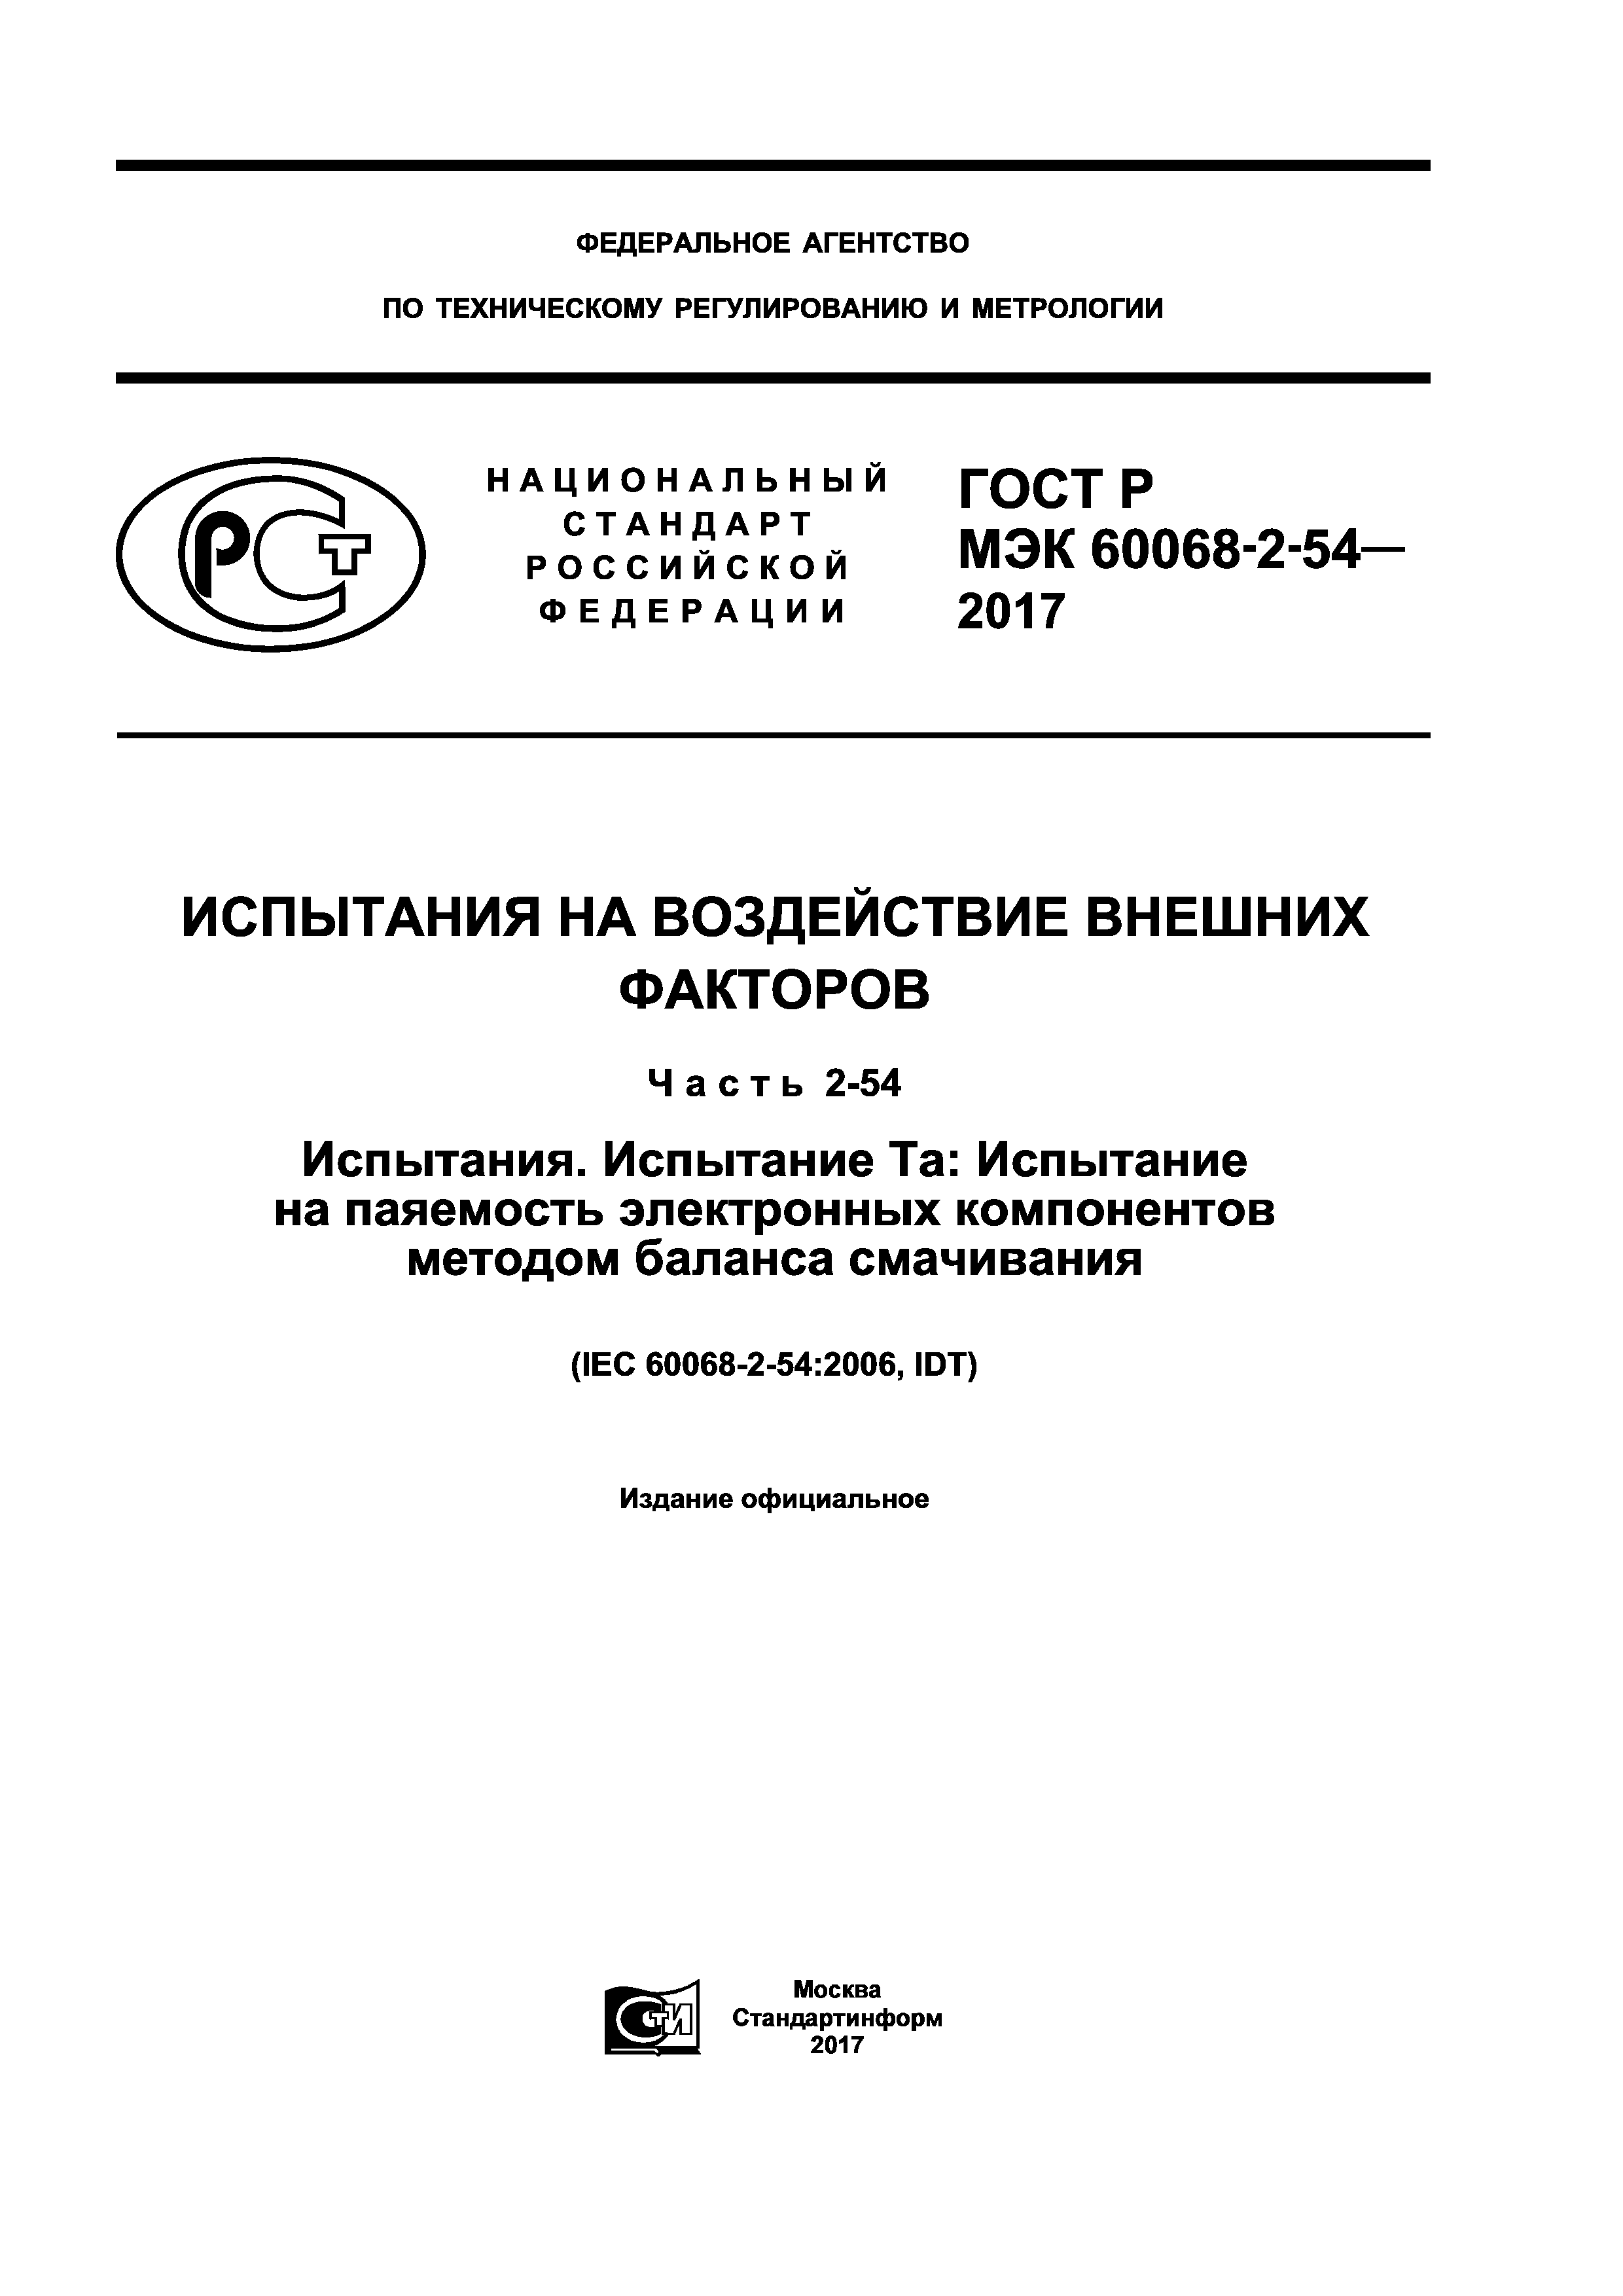 ГОСТ Р МЭК 60068-2-54-2017